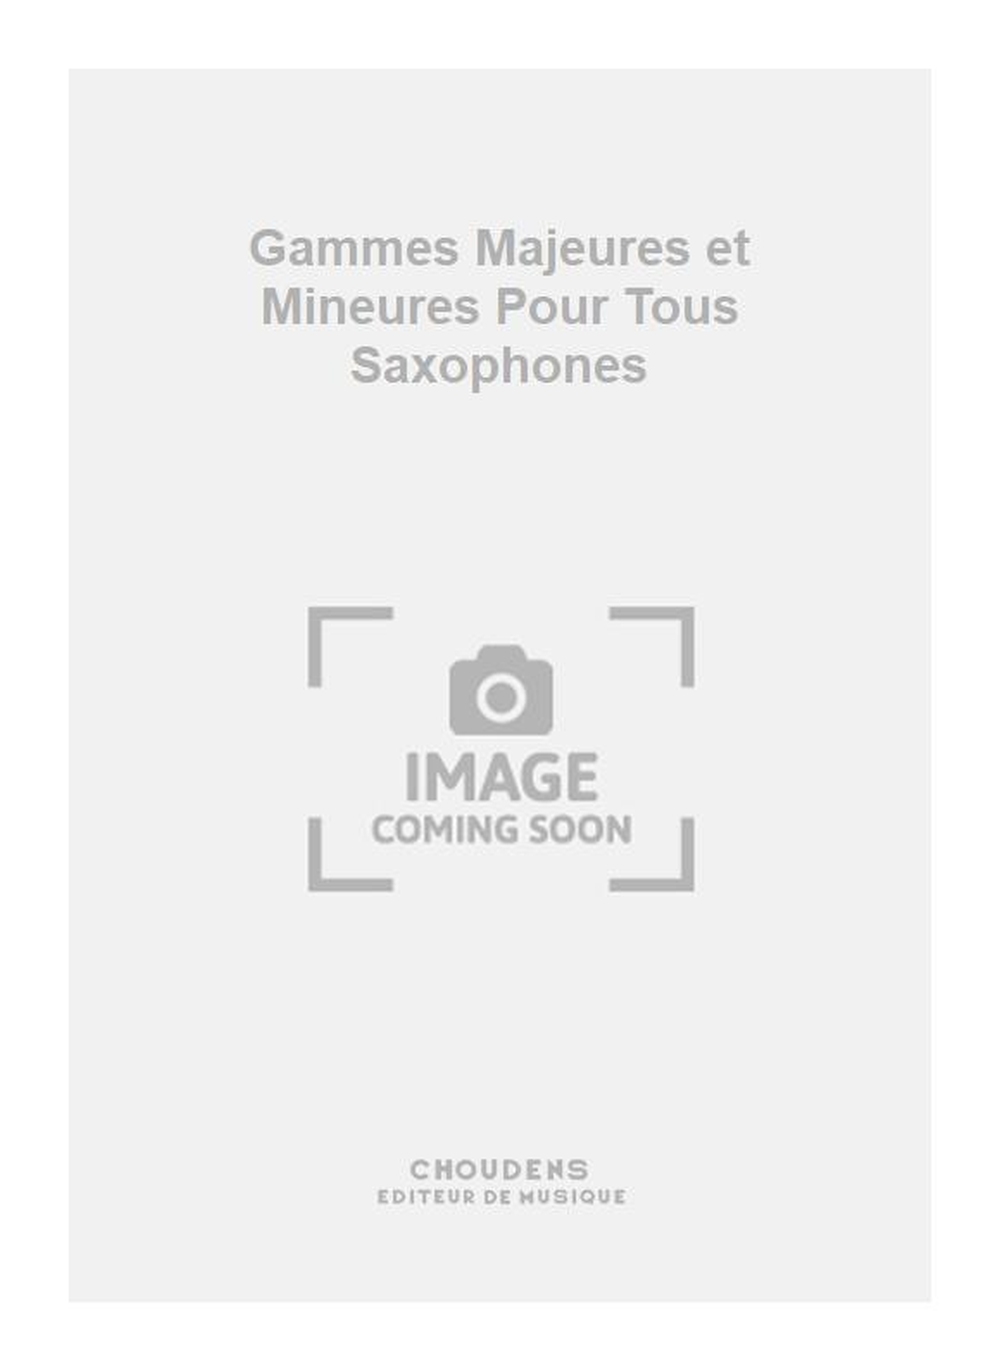 Antoine: Gammes Majeures et Mineures Pour Tous Saxophones